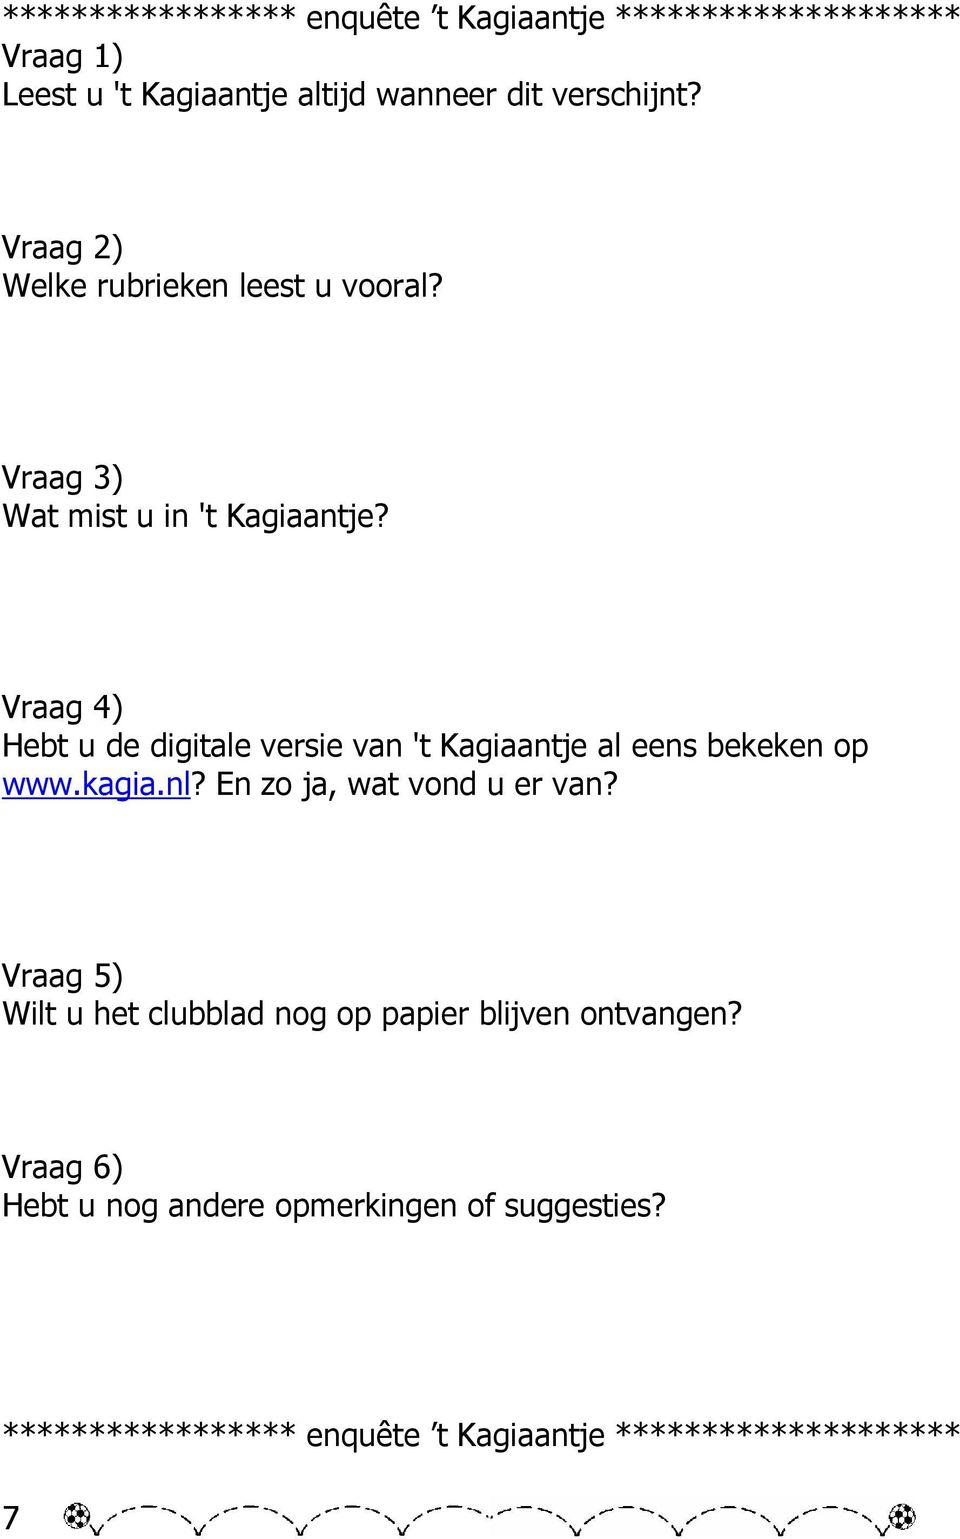 Vraag 4) Hebt u de digitale versie van 't Kagiaantje al eens bekeken op www.kagia.nl? En zo ja, wat vond u er van?